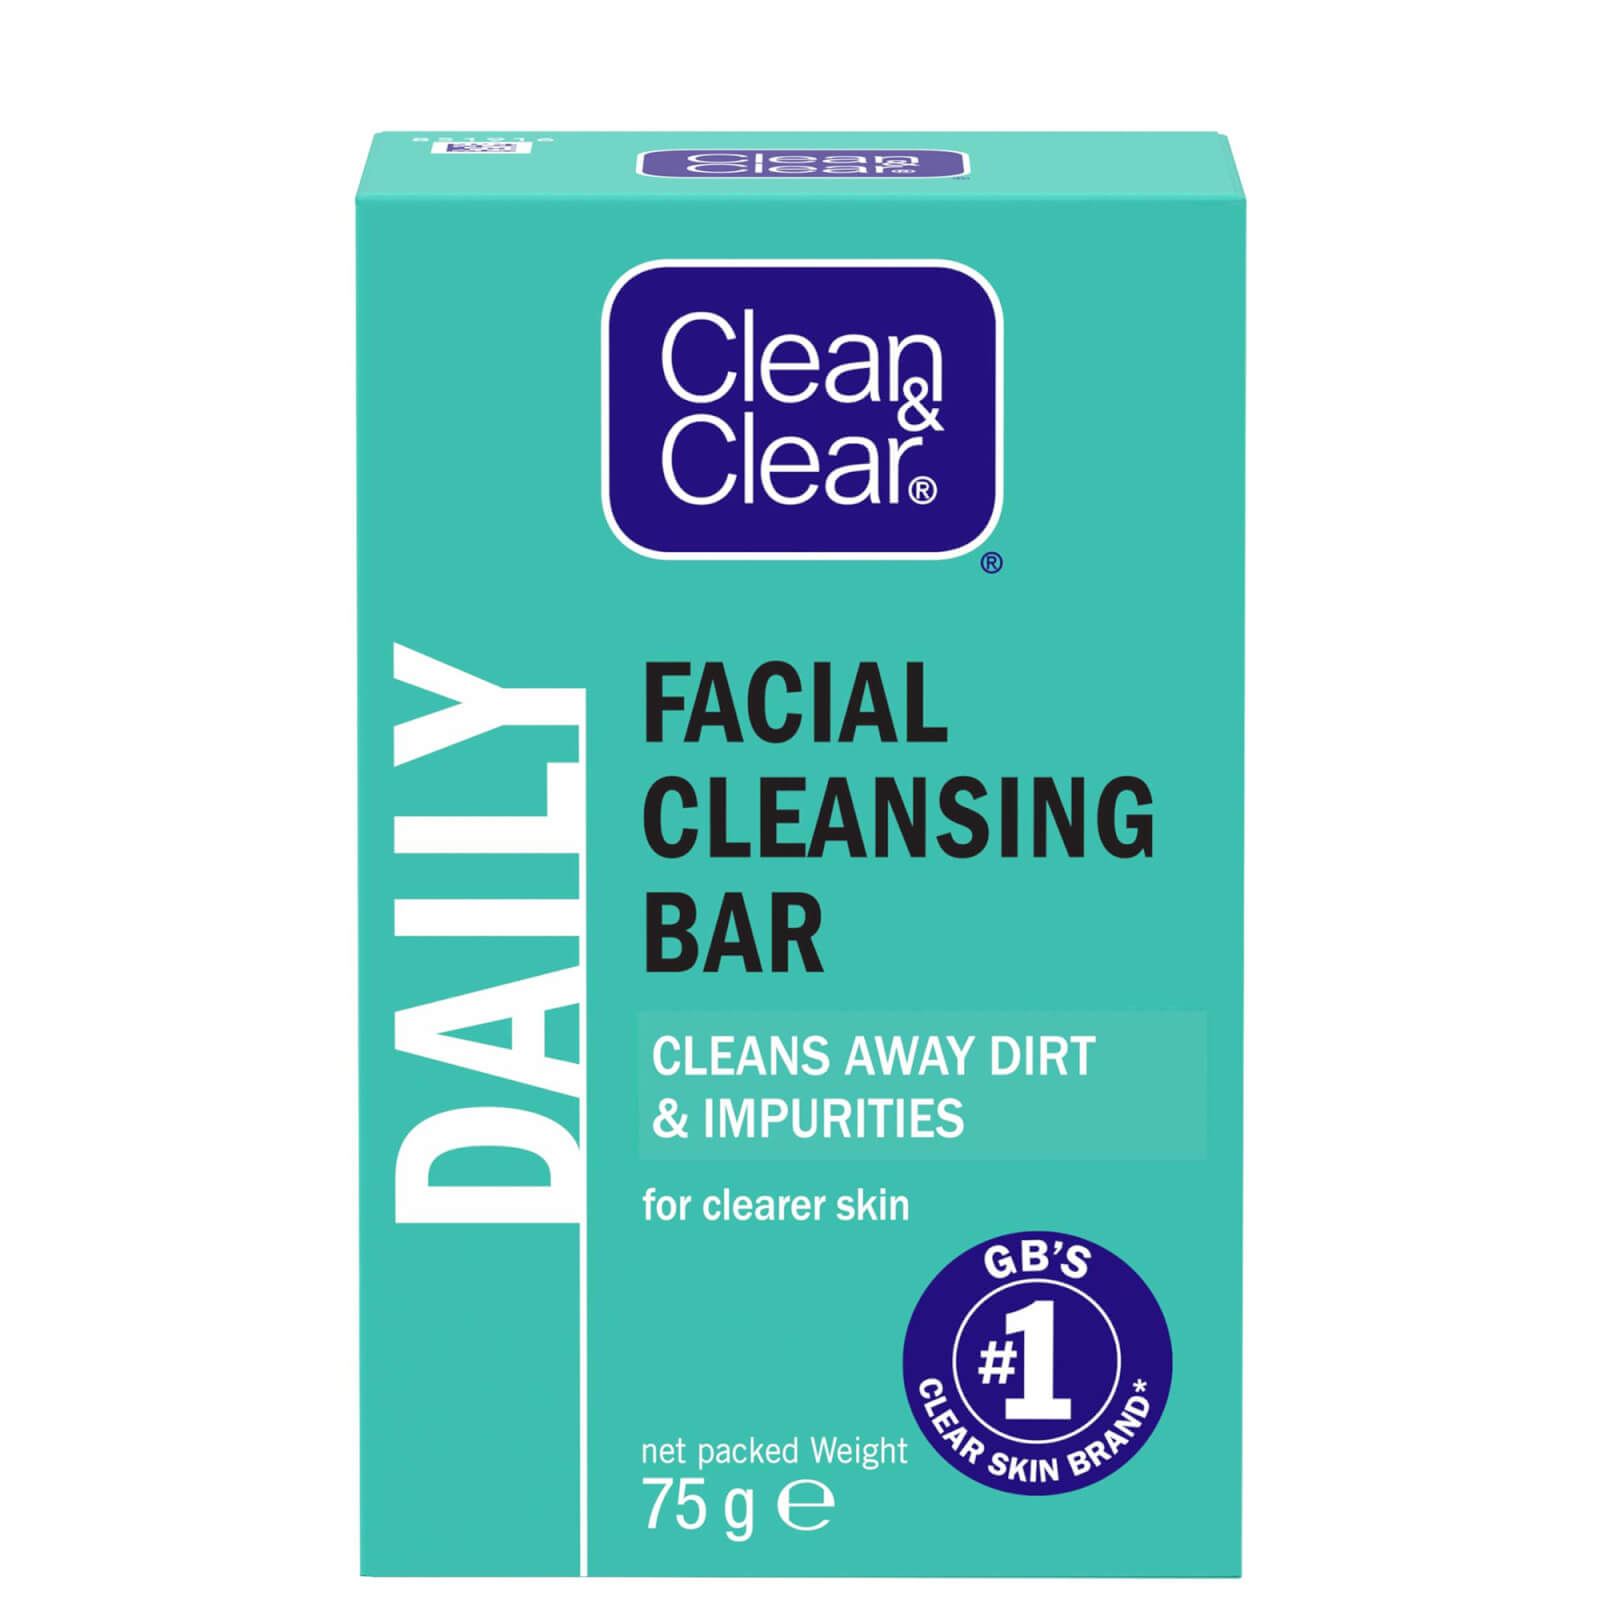 Clean & Clear Facial Cleansing Bar 75g